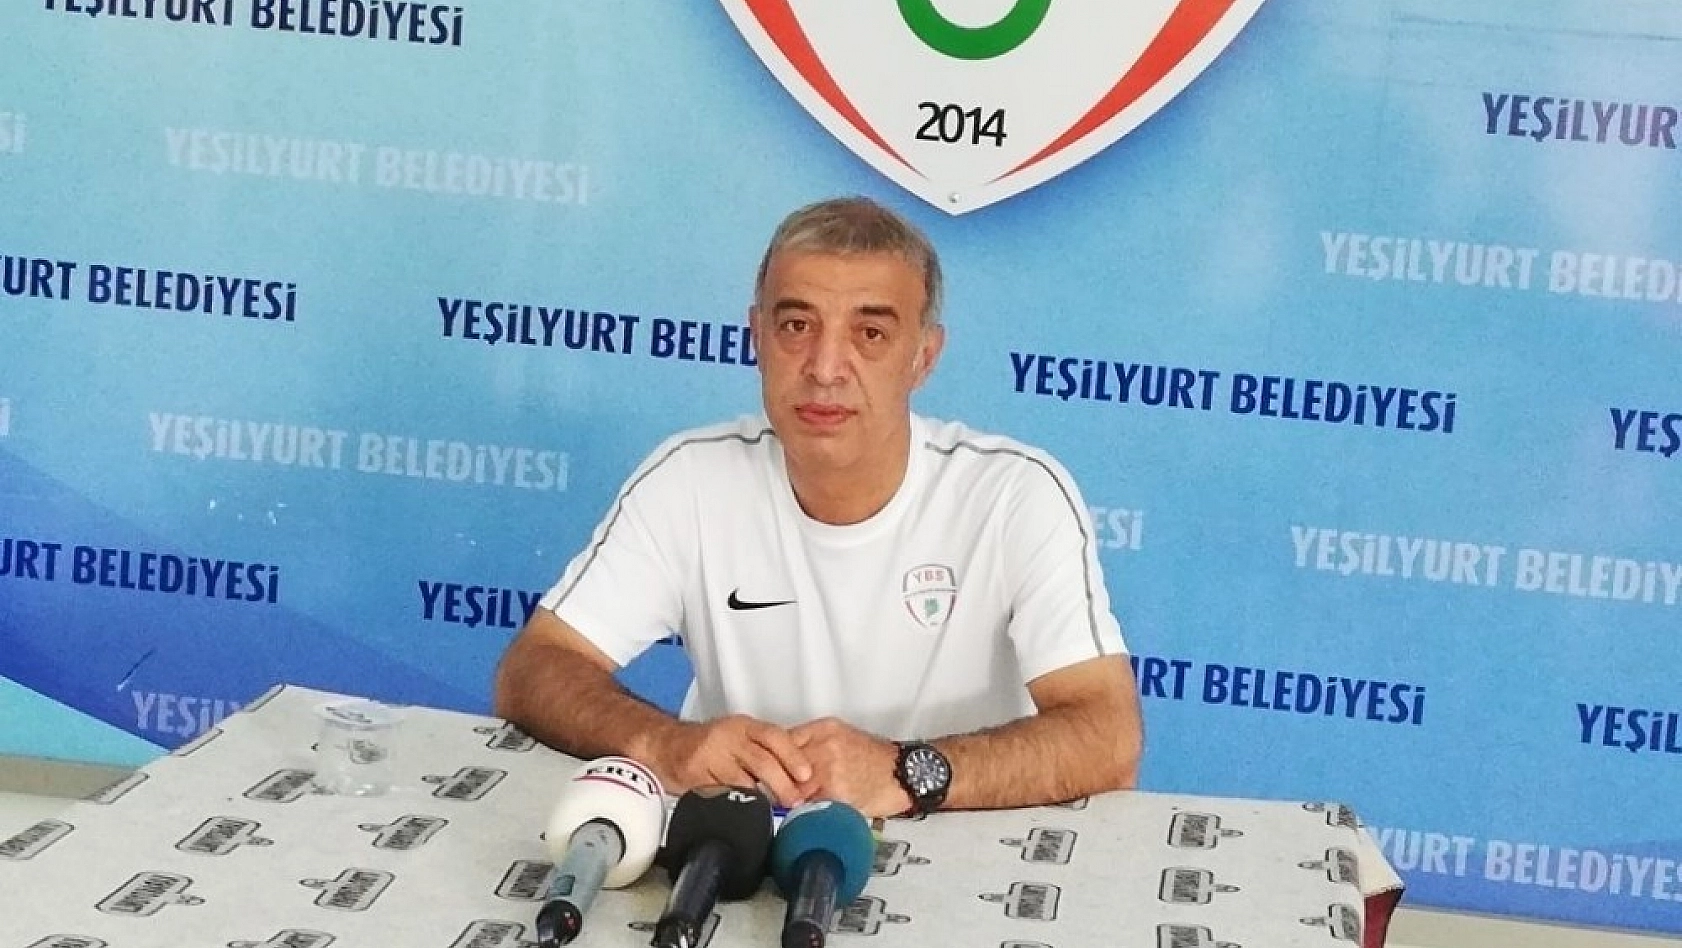 Malatya Yeşilyurt Belediyespor Elbistan Belediyespor ile karşılaşacak 